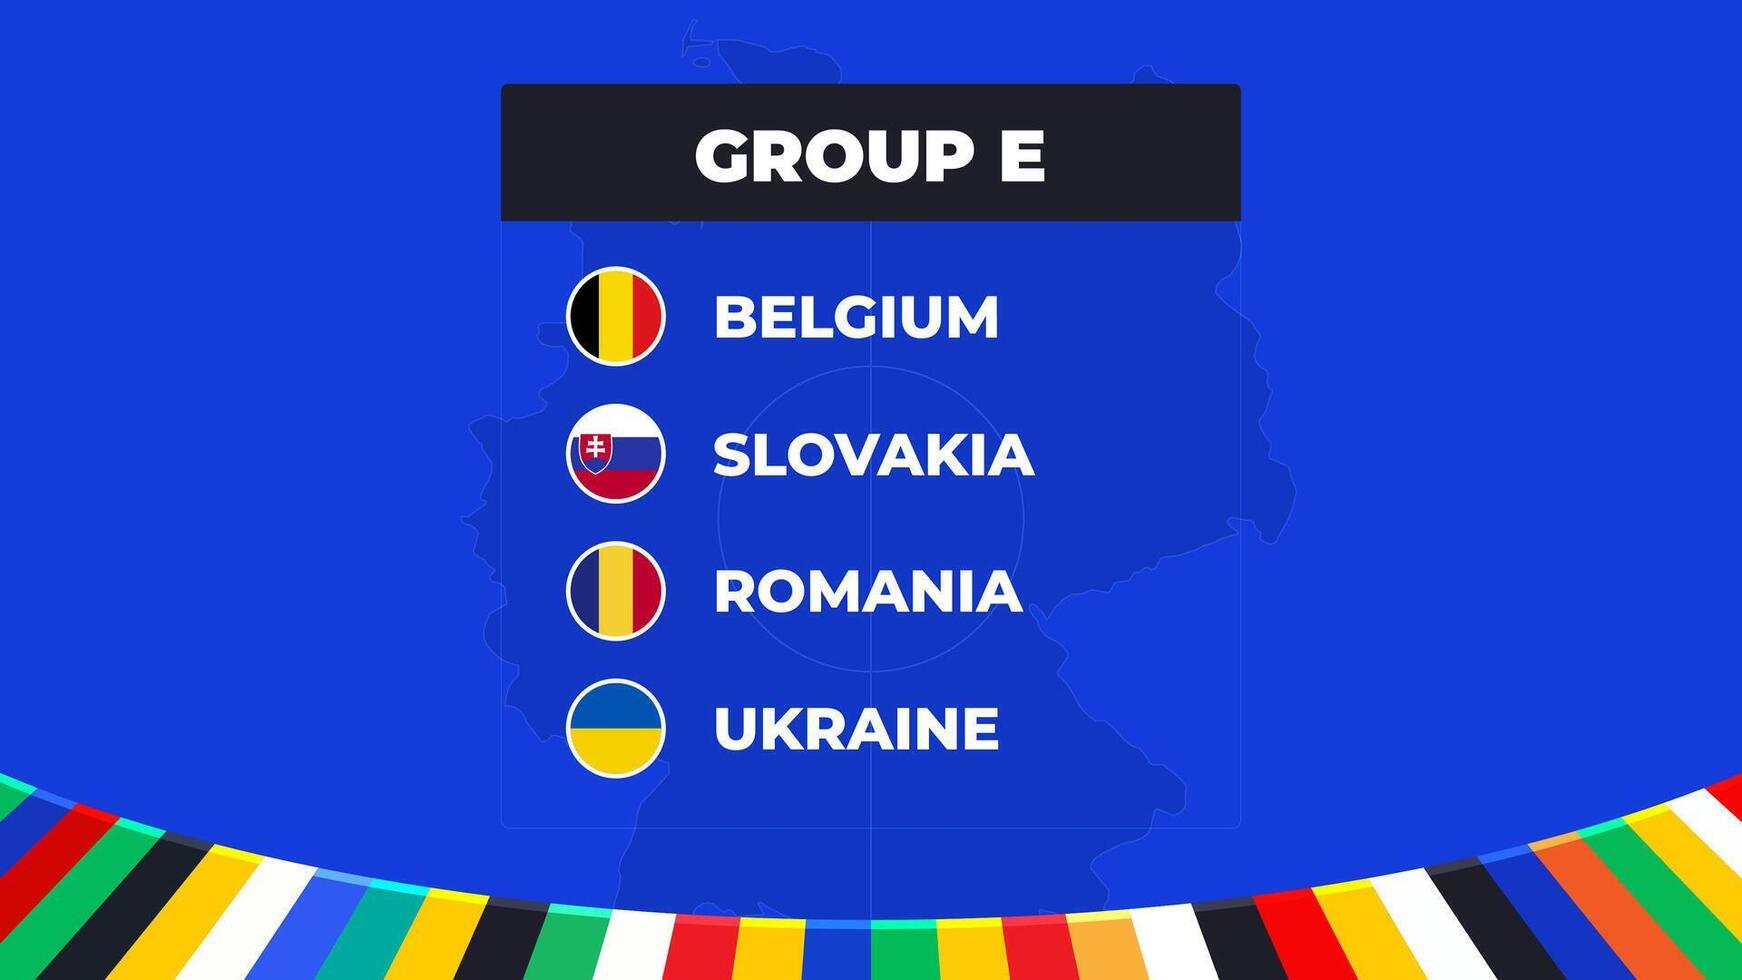 grupo e do a europeu futebol torneio dentro Alemanha 2024 grupo etapa do europeu futebol competições dentro Alemanha vetor